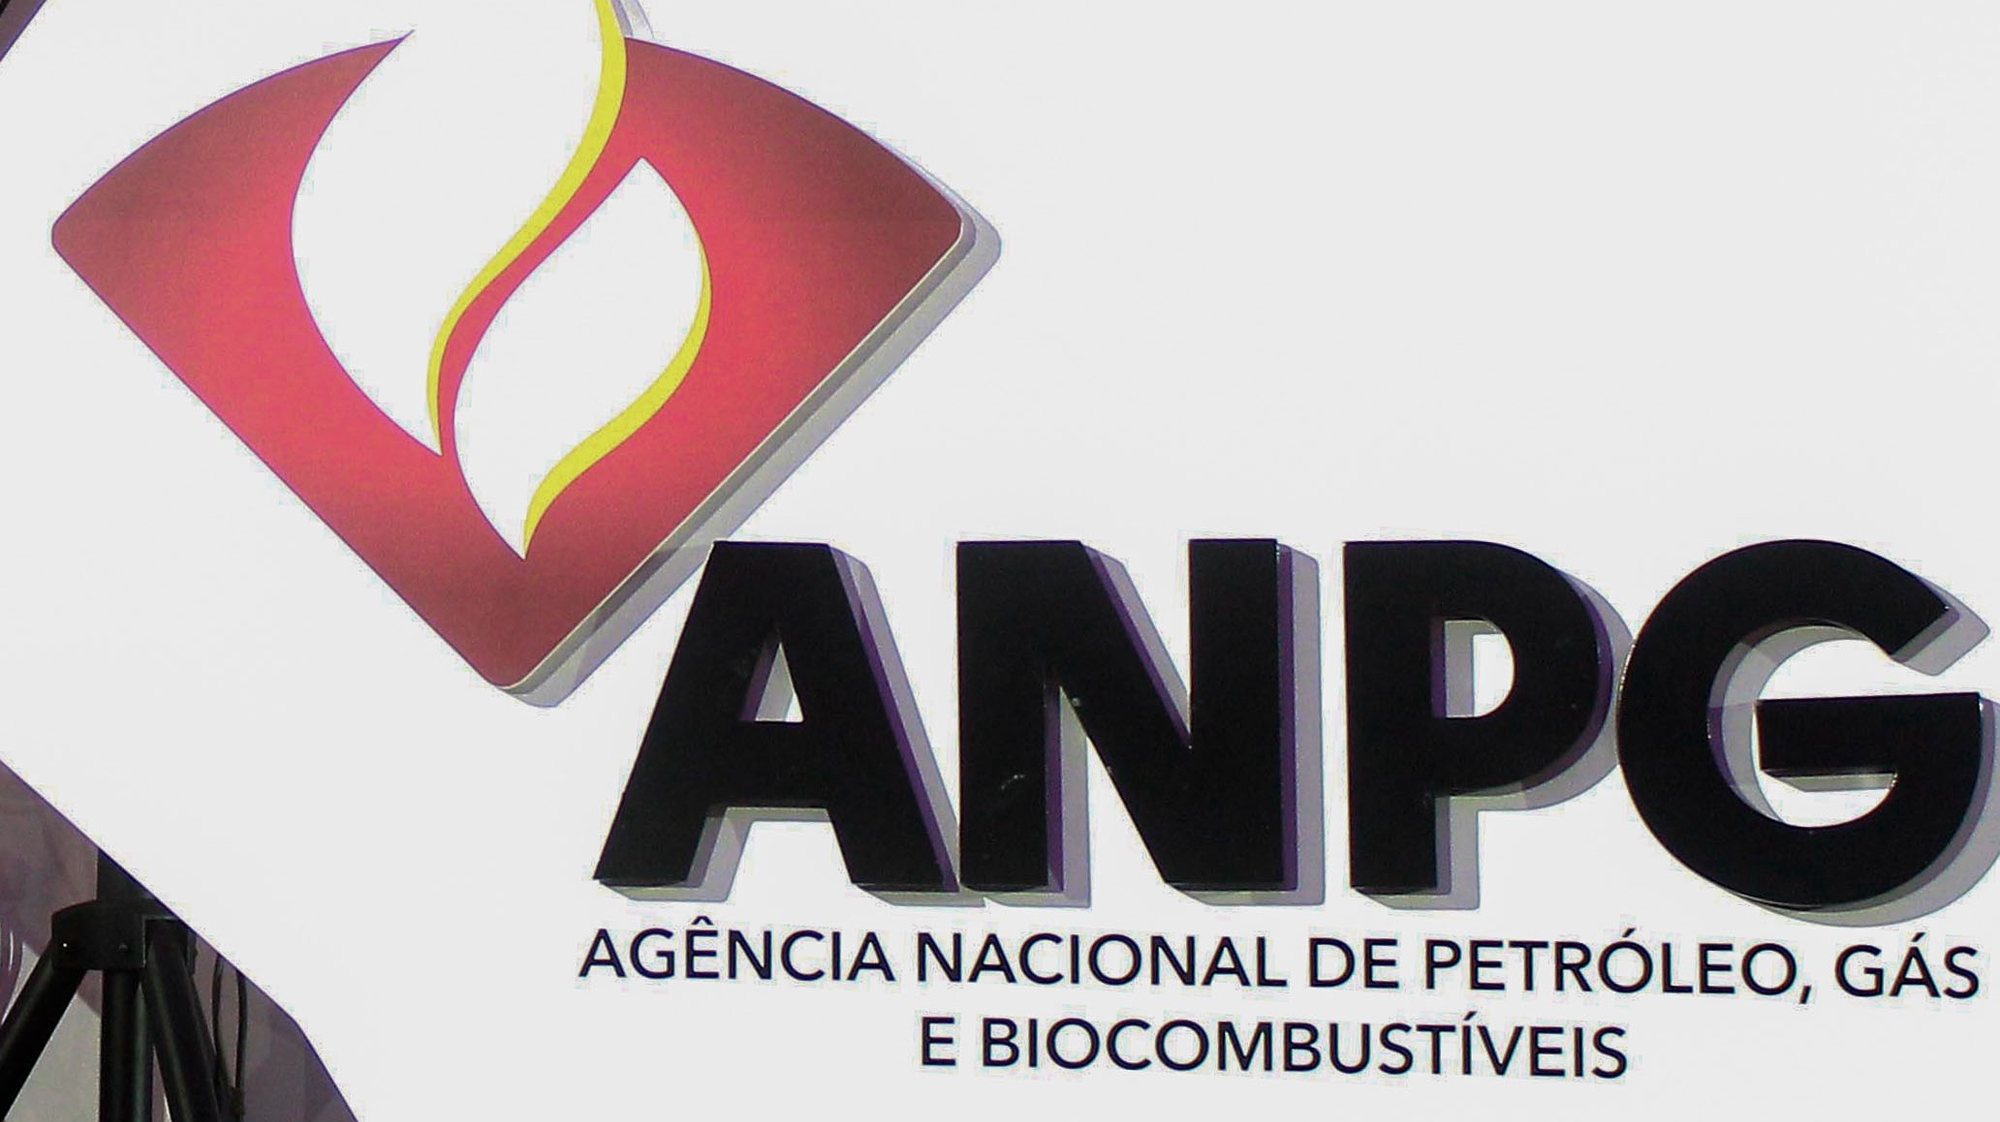 Logótipo da Agência Nacional de Petróleo, Gás e Biocombustíveis de Angola, 03 de setembro de 2019. AMPE ROGÉRIO / LUSA